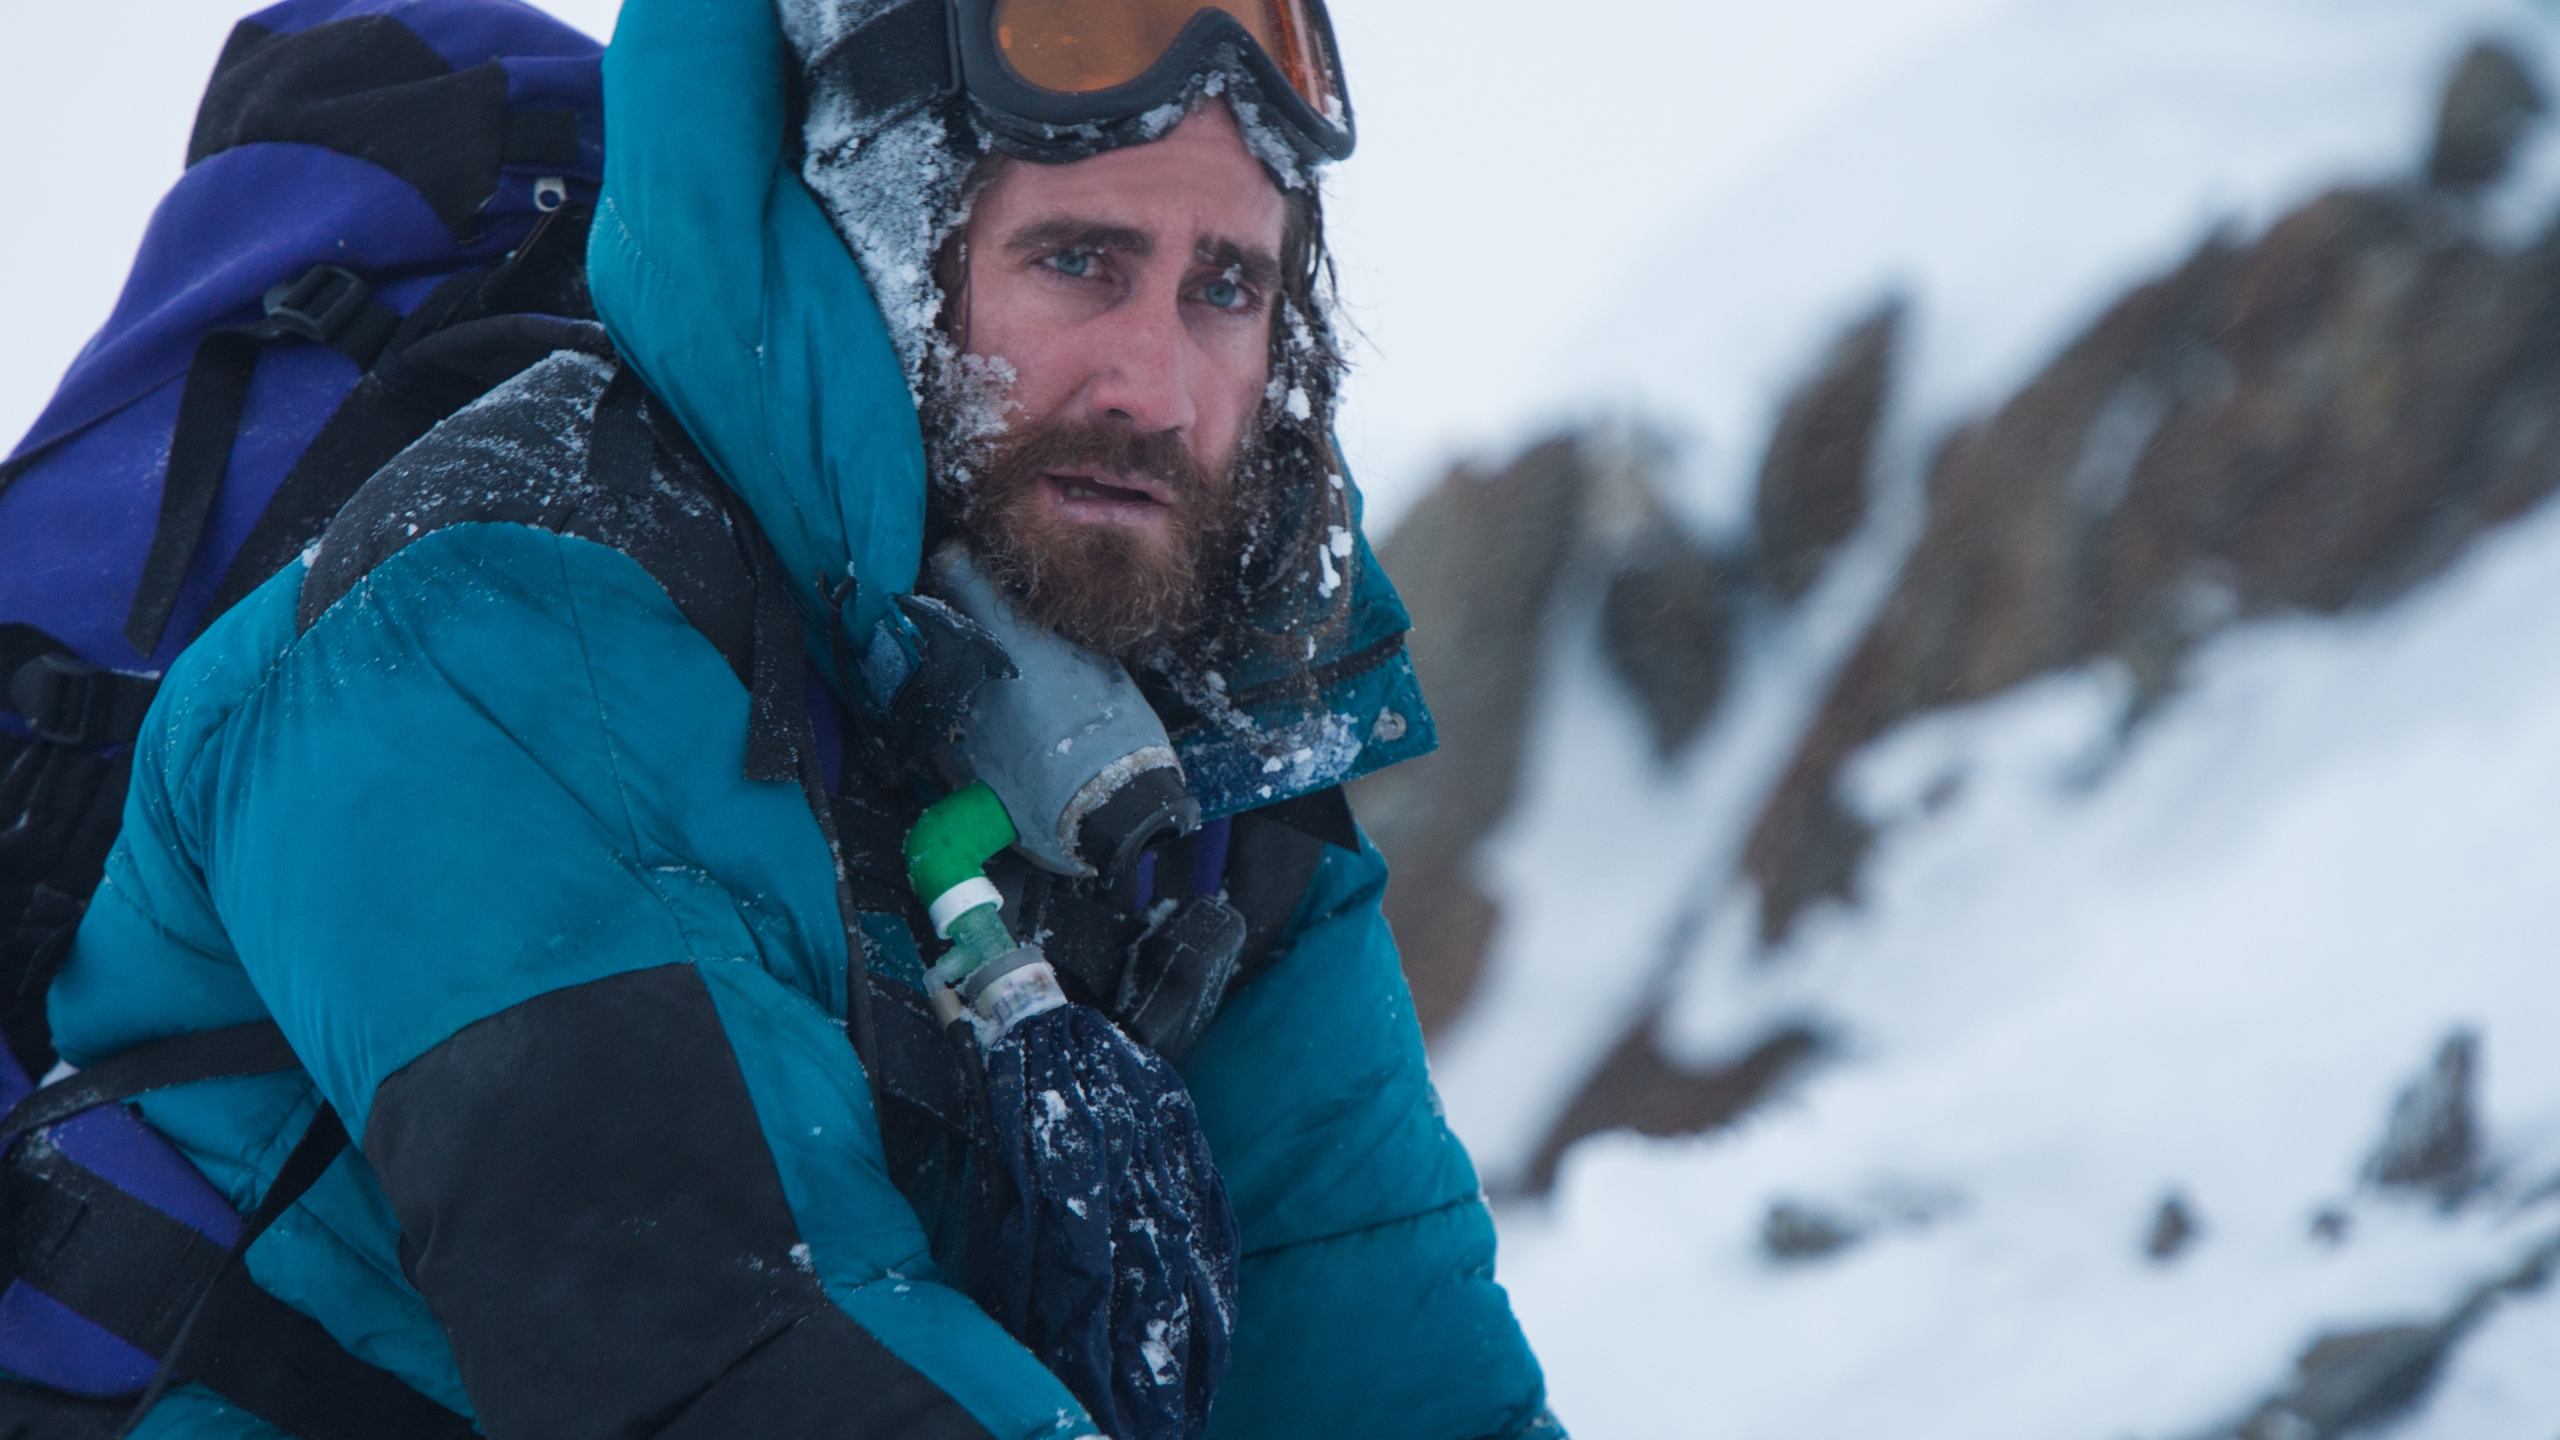 Everest Movie Jake Gyllenhaal for 2560x1440 HDTV resolution